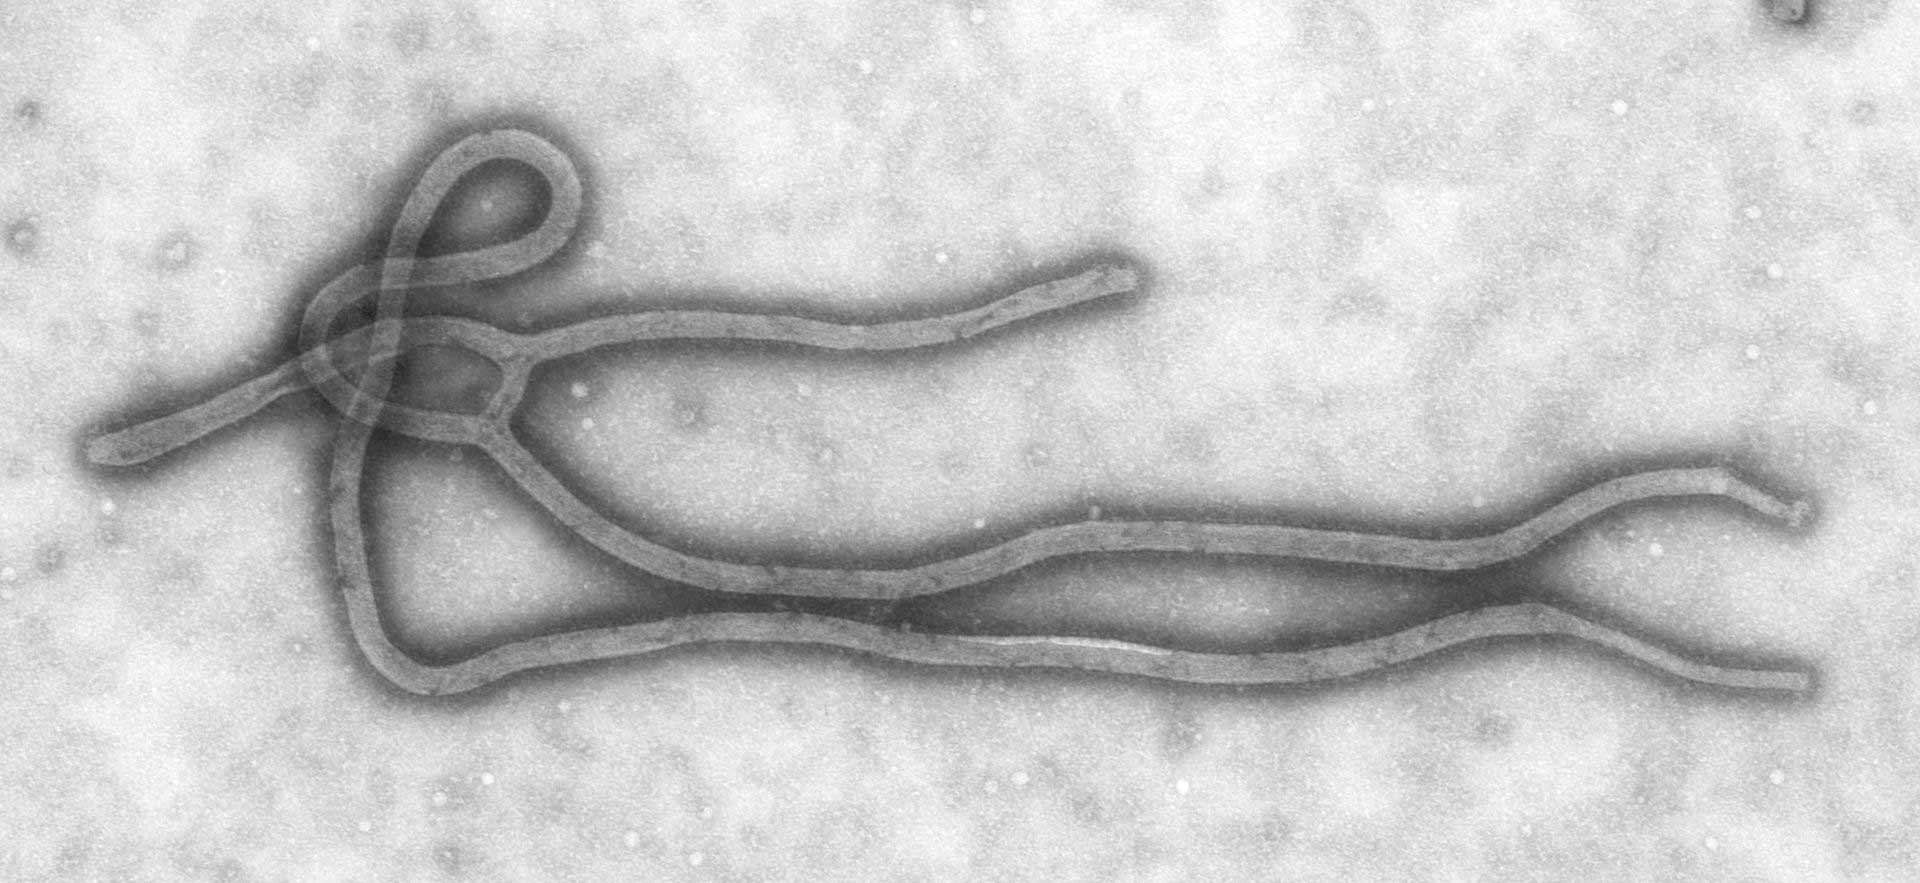 Ebola Virus through a microscope